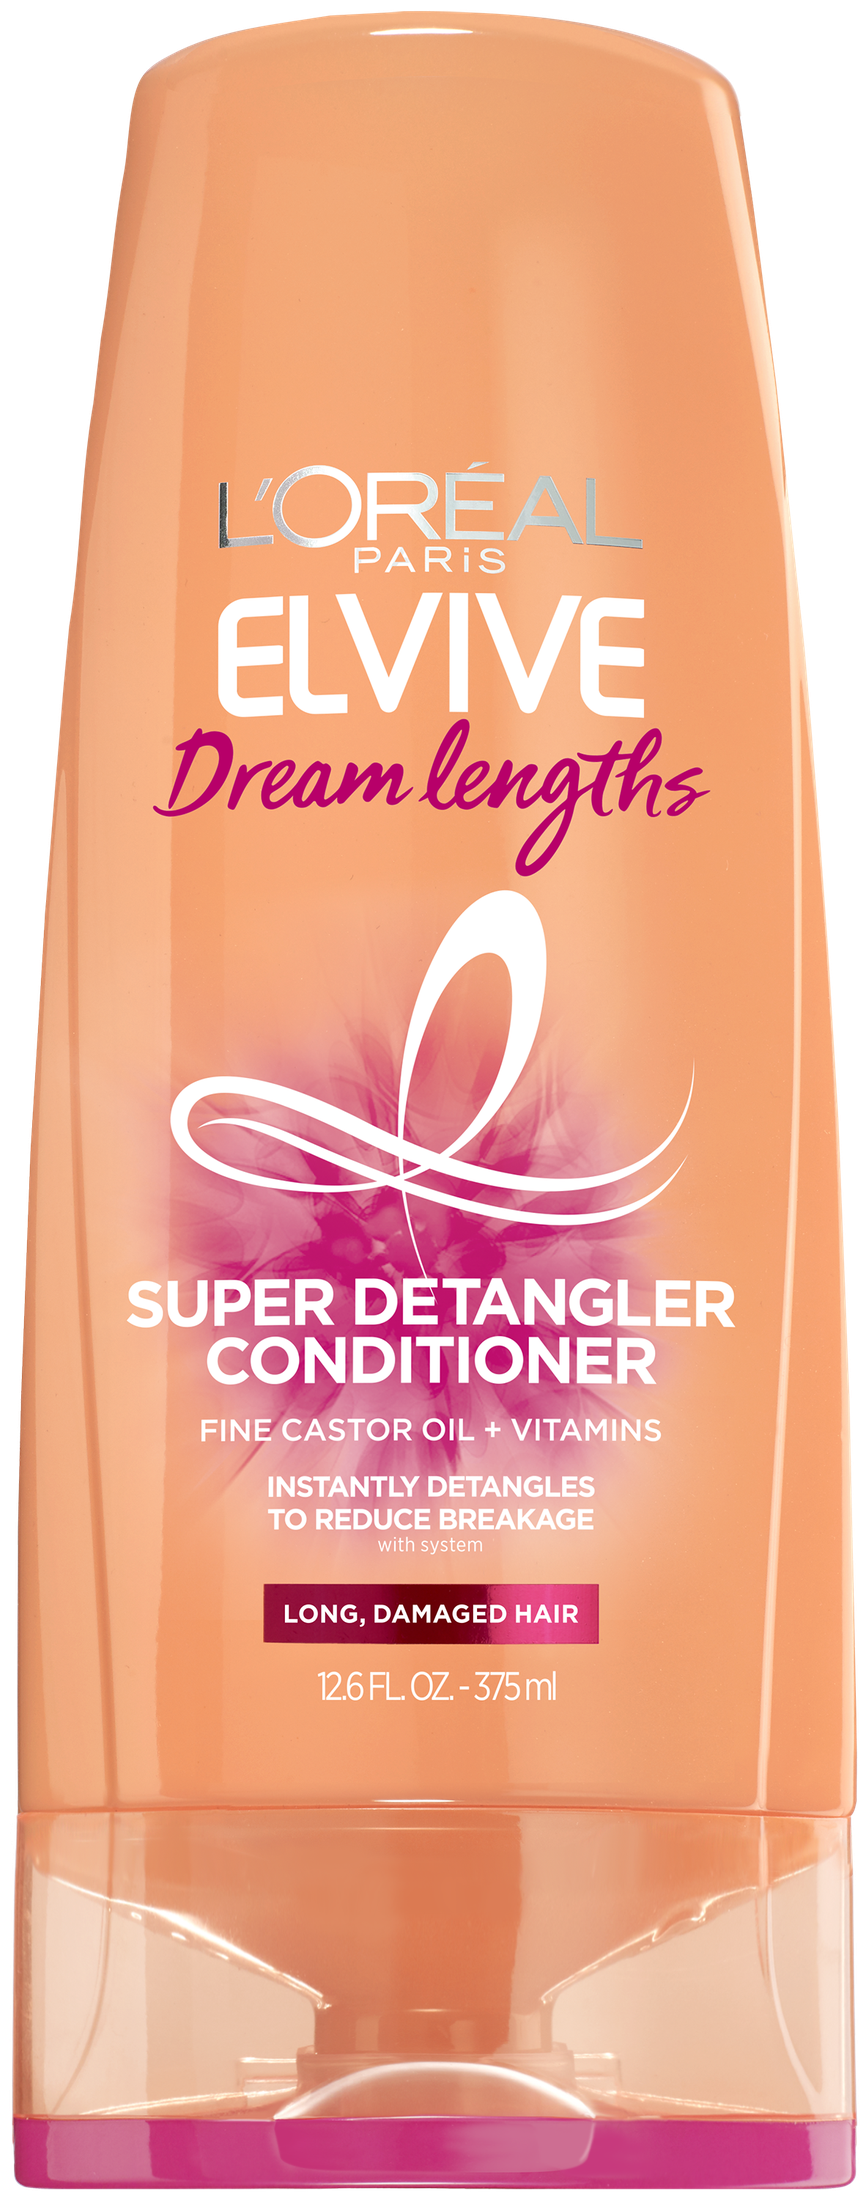 L'Oreal Elvive Dream Lengths Super Detangler Conditioner with Castor Oil, 12.6 fl oz - image 1 of 8